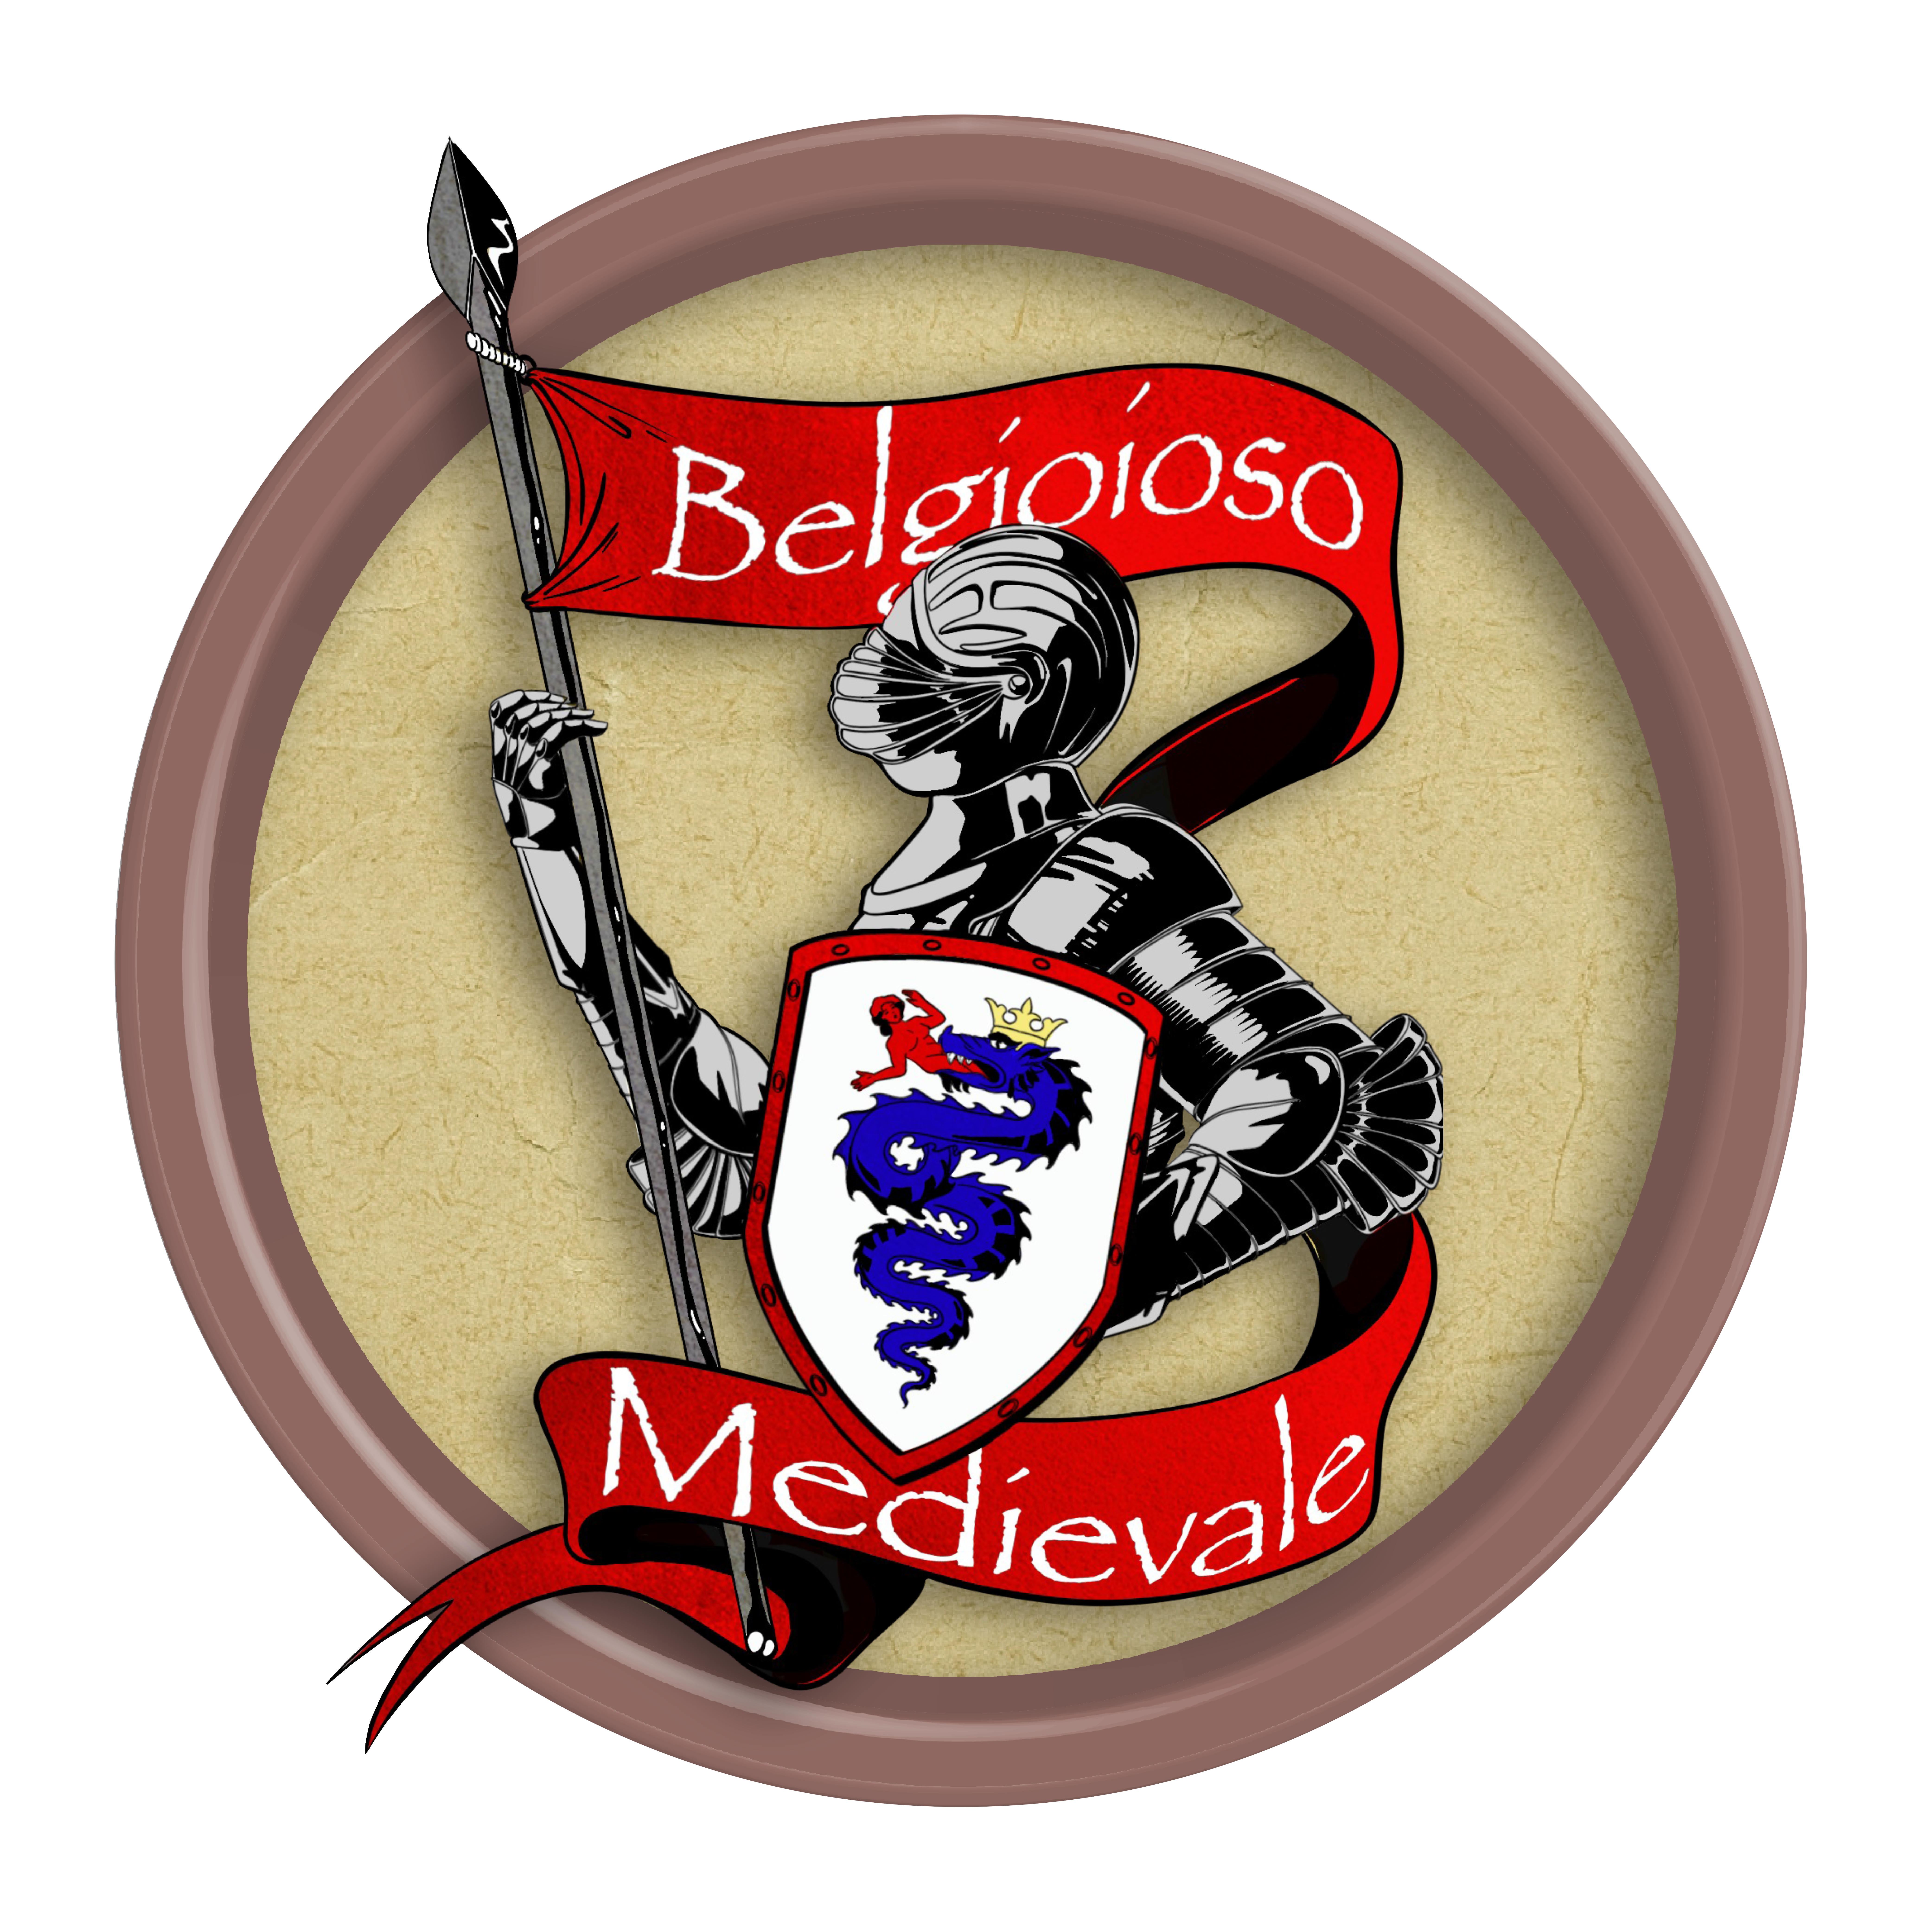 Belgioioso Medievale, una giornata nel Medioevo